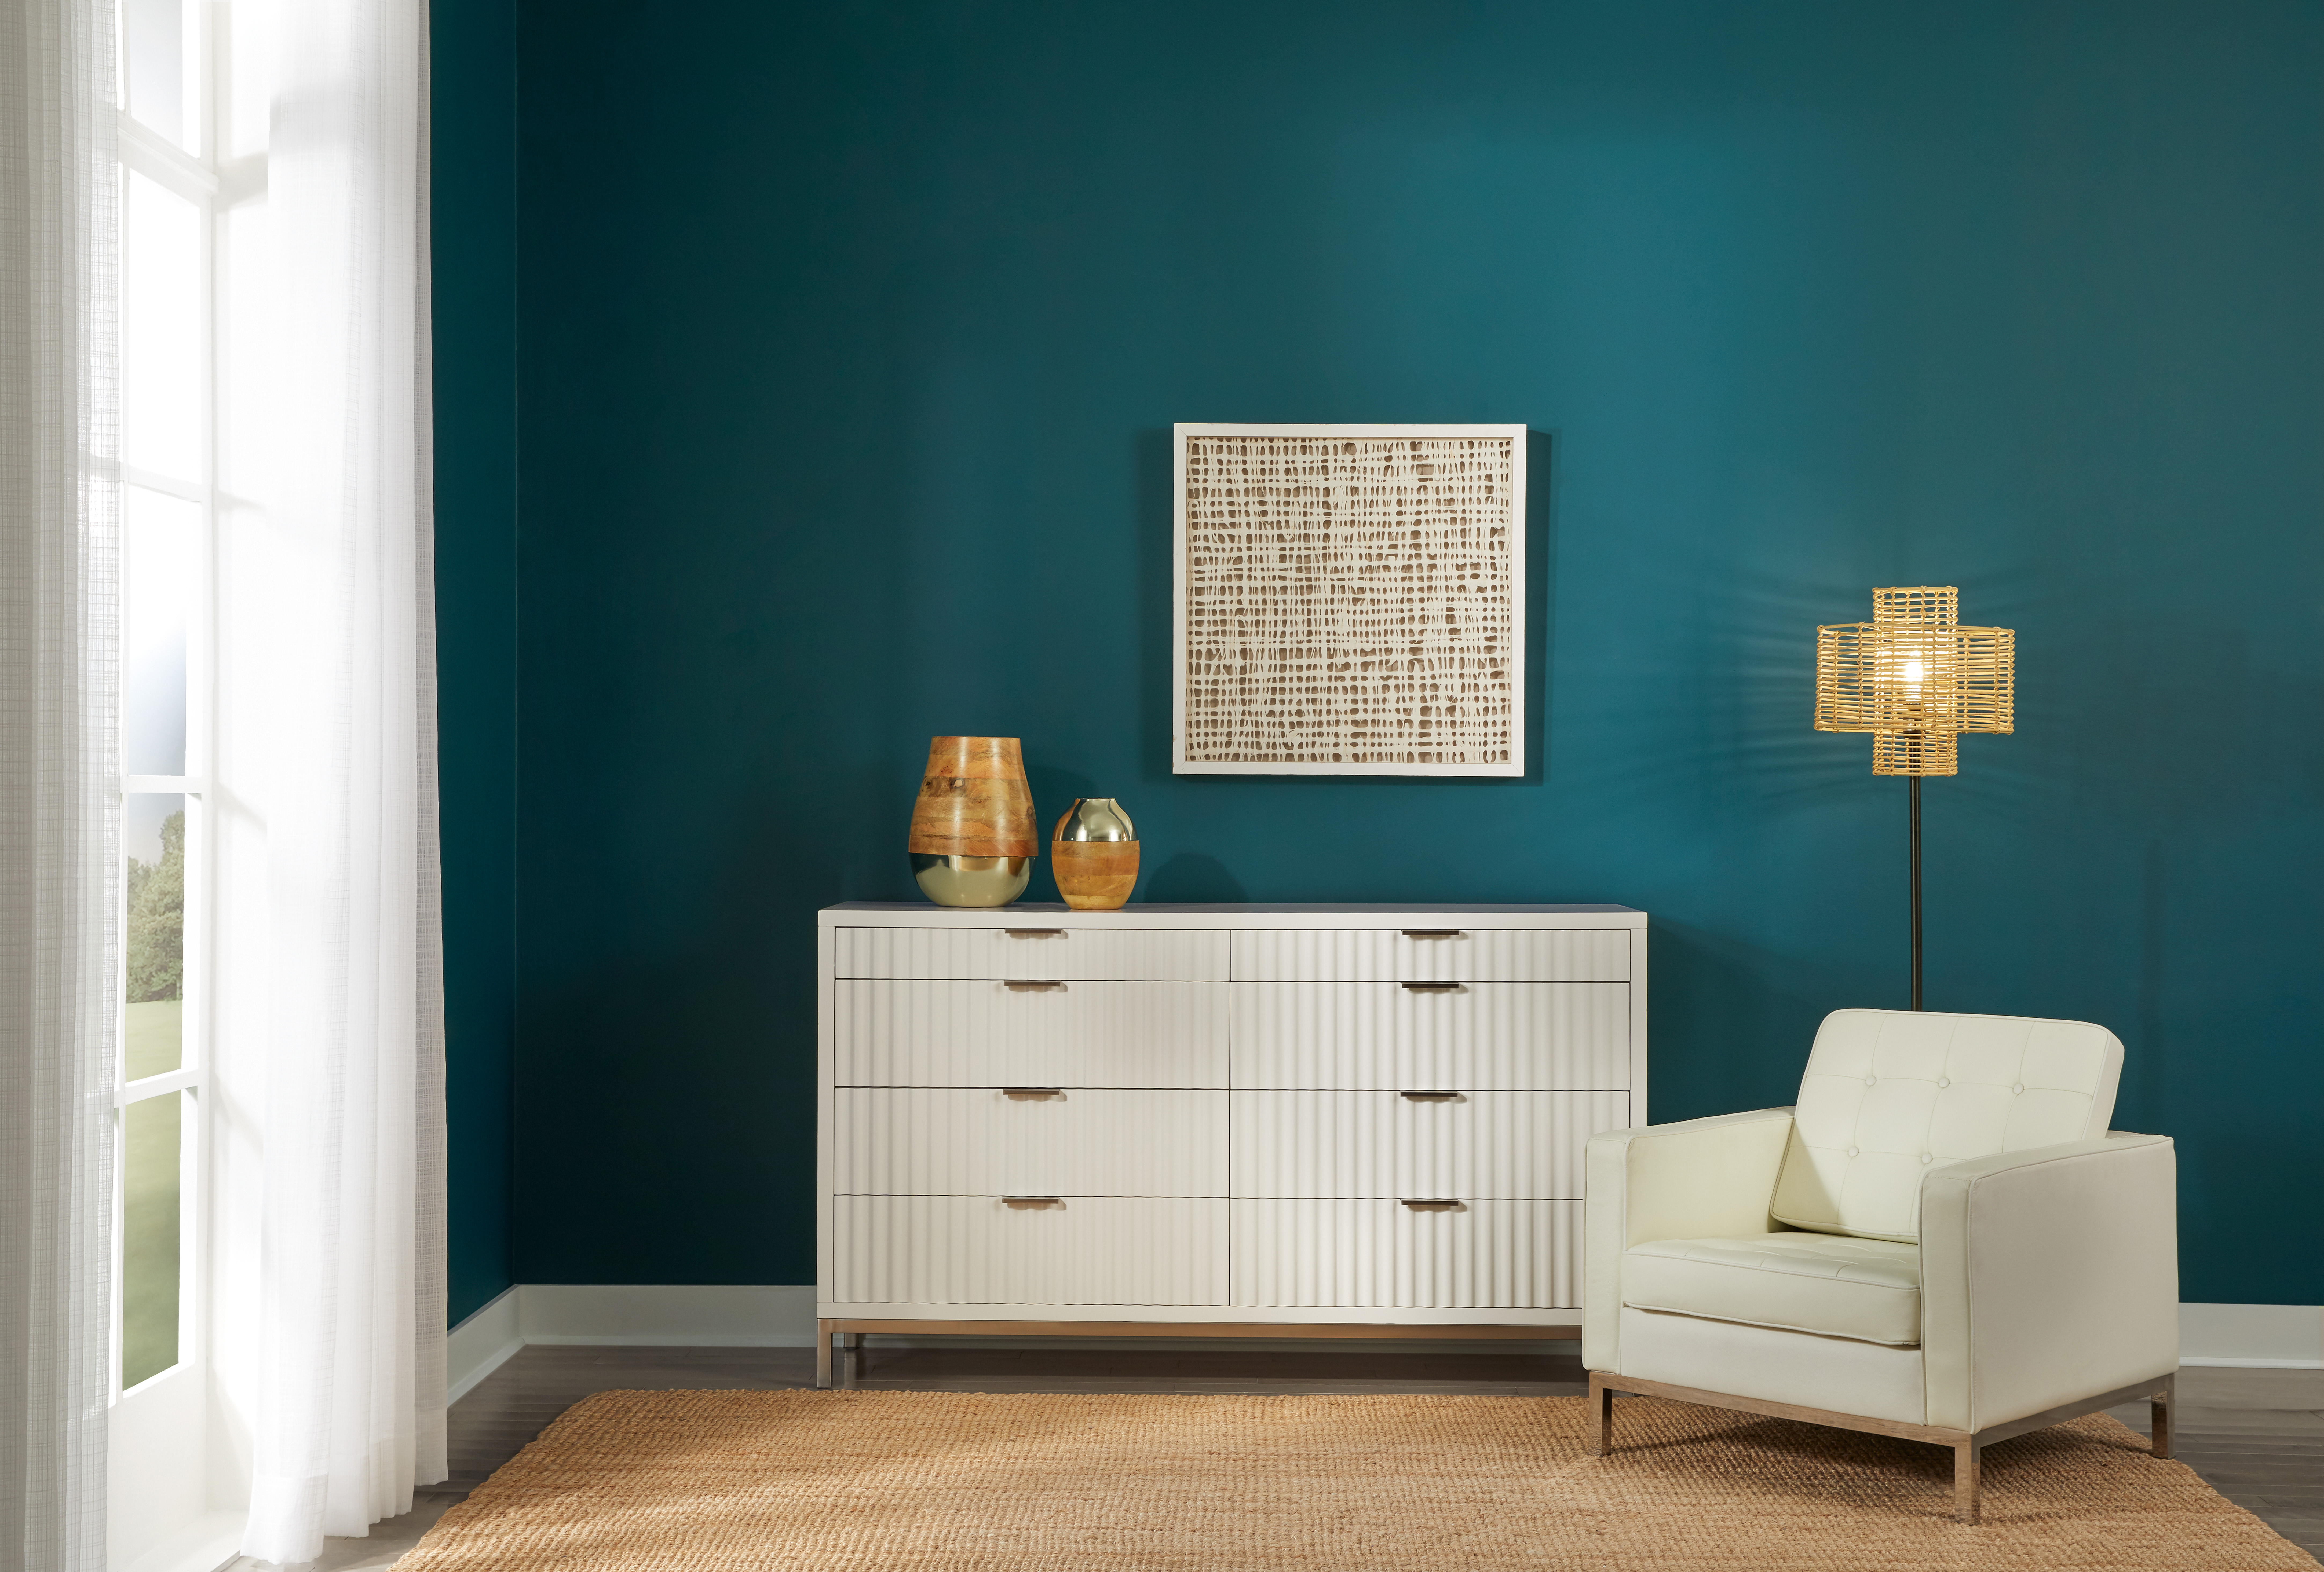 Un angle d'un côté d'une chambre, le mur est peint en sarcelle, teinte inspirée des profondeurs de l'océan et qui s'appelle Abîme d'océan. Il y a une commode de couleur claire et une chaise rembourrée devant le mur, ce qui crée un joli contraste entre le mur et les meubles.